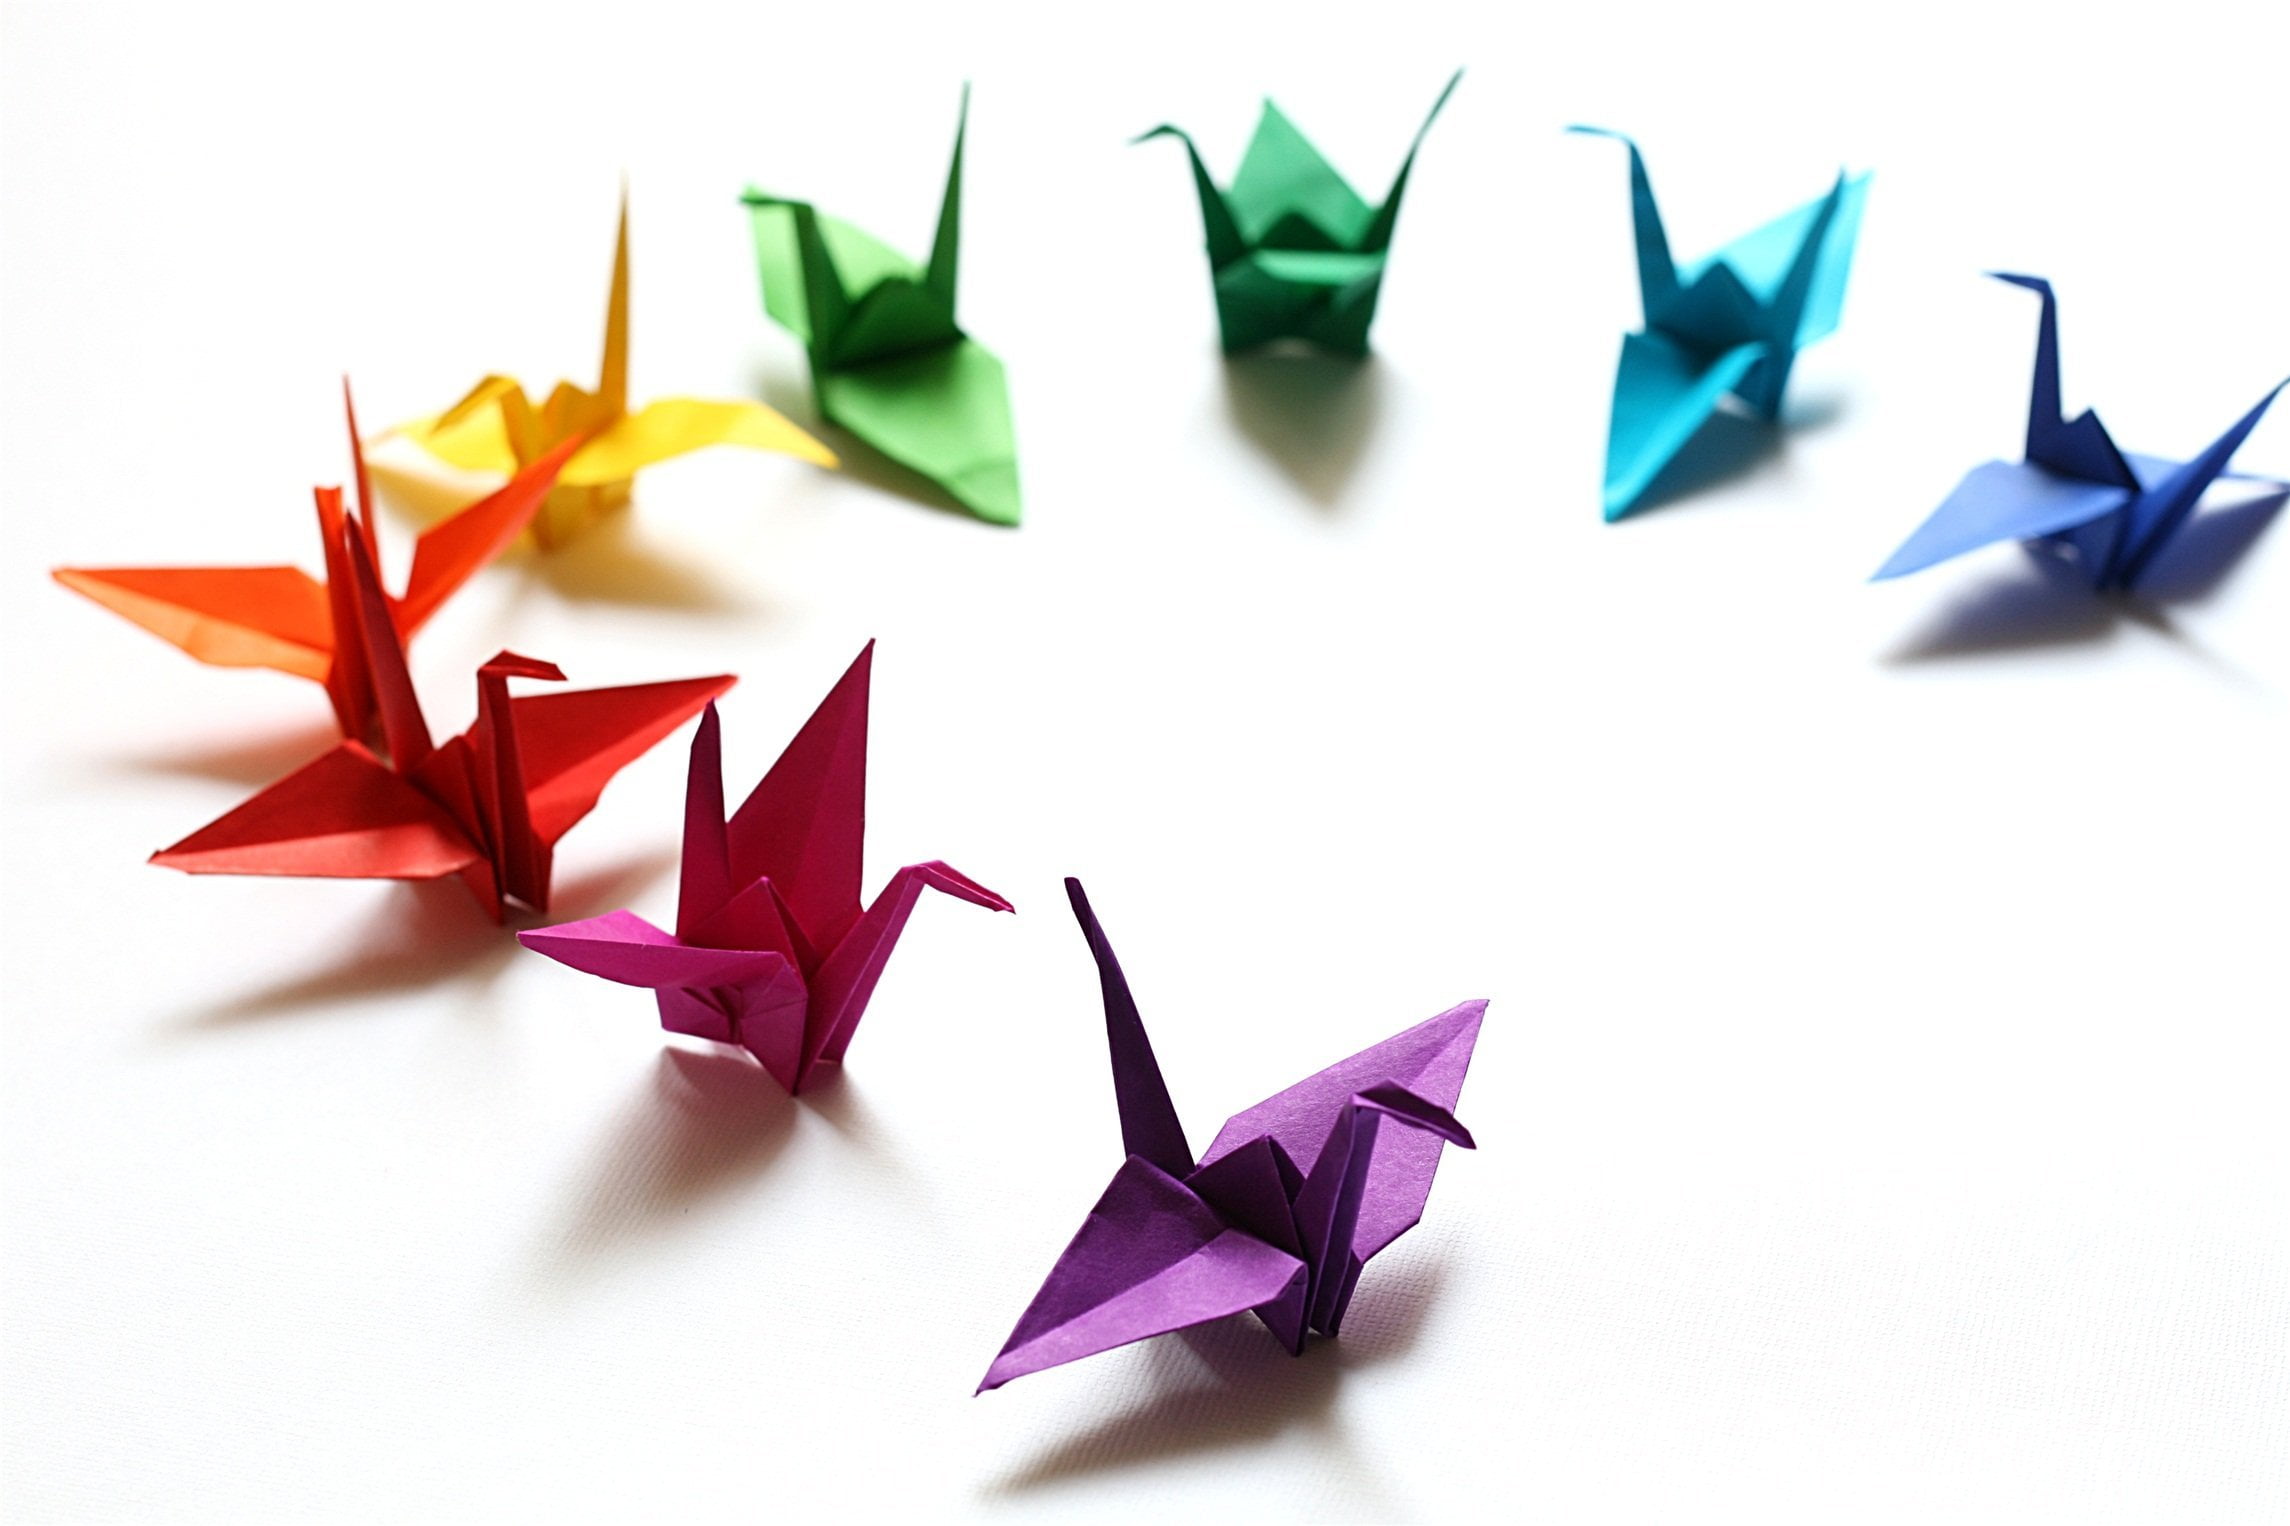  Aitoh Origami Paper 6X6 20/Pkg-Riggsbee Designs